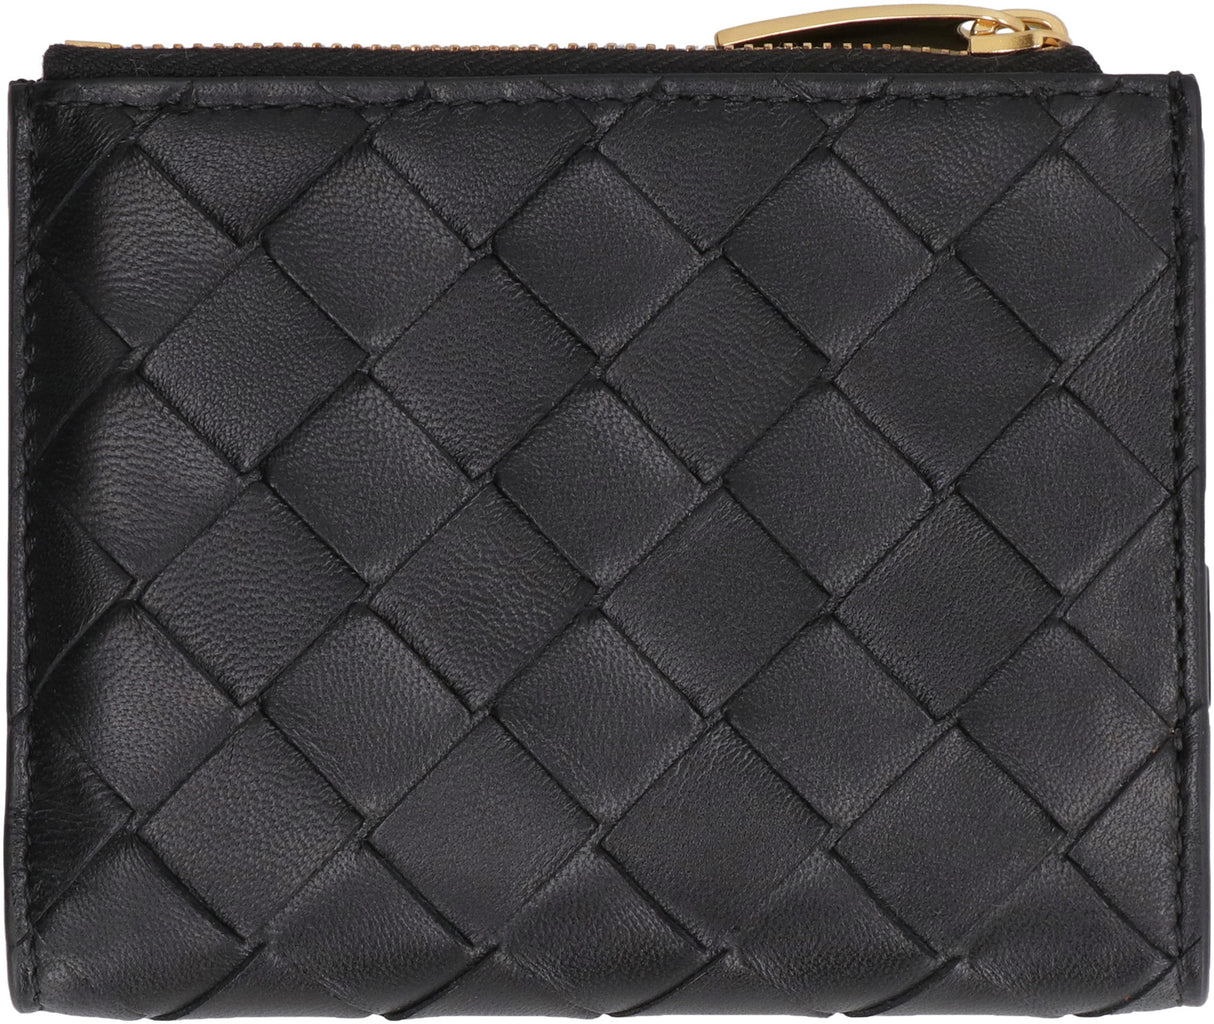 BOTTEGA VENETA Black Intrecciato Leather Wallet - FW23 Collection for Women